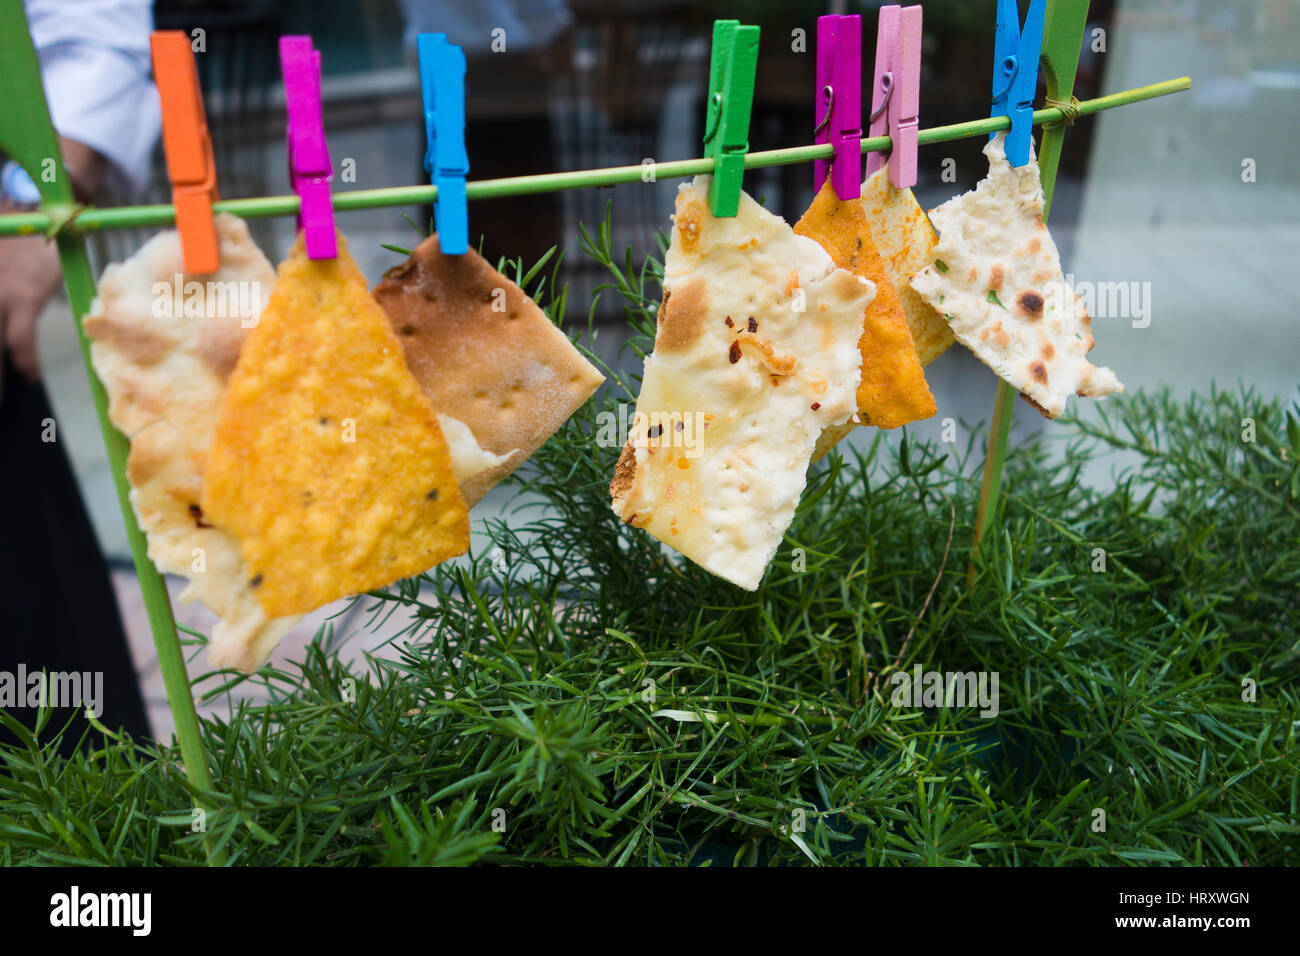 Stylisme culinaire créative de nachos et pains plats accrochés à l'aide de clips de couleur Banque D'Images